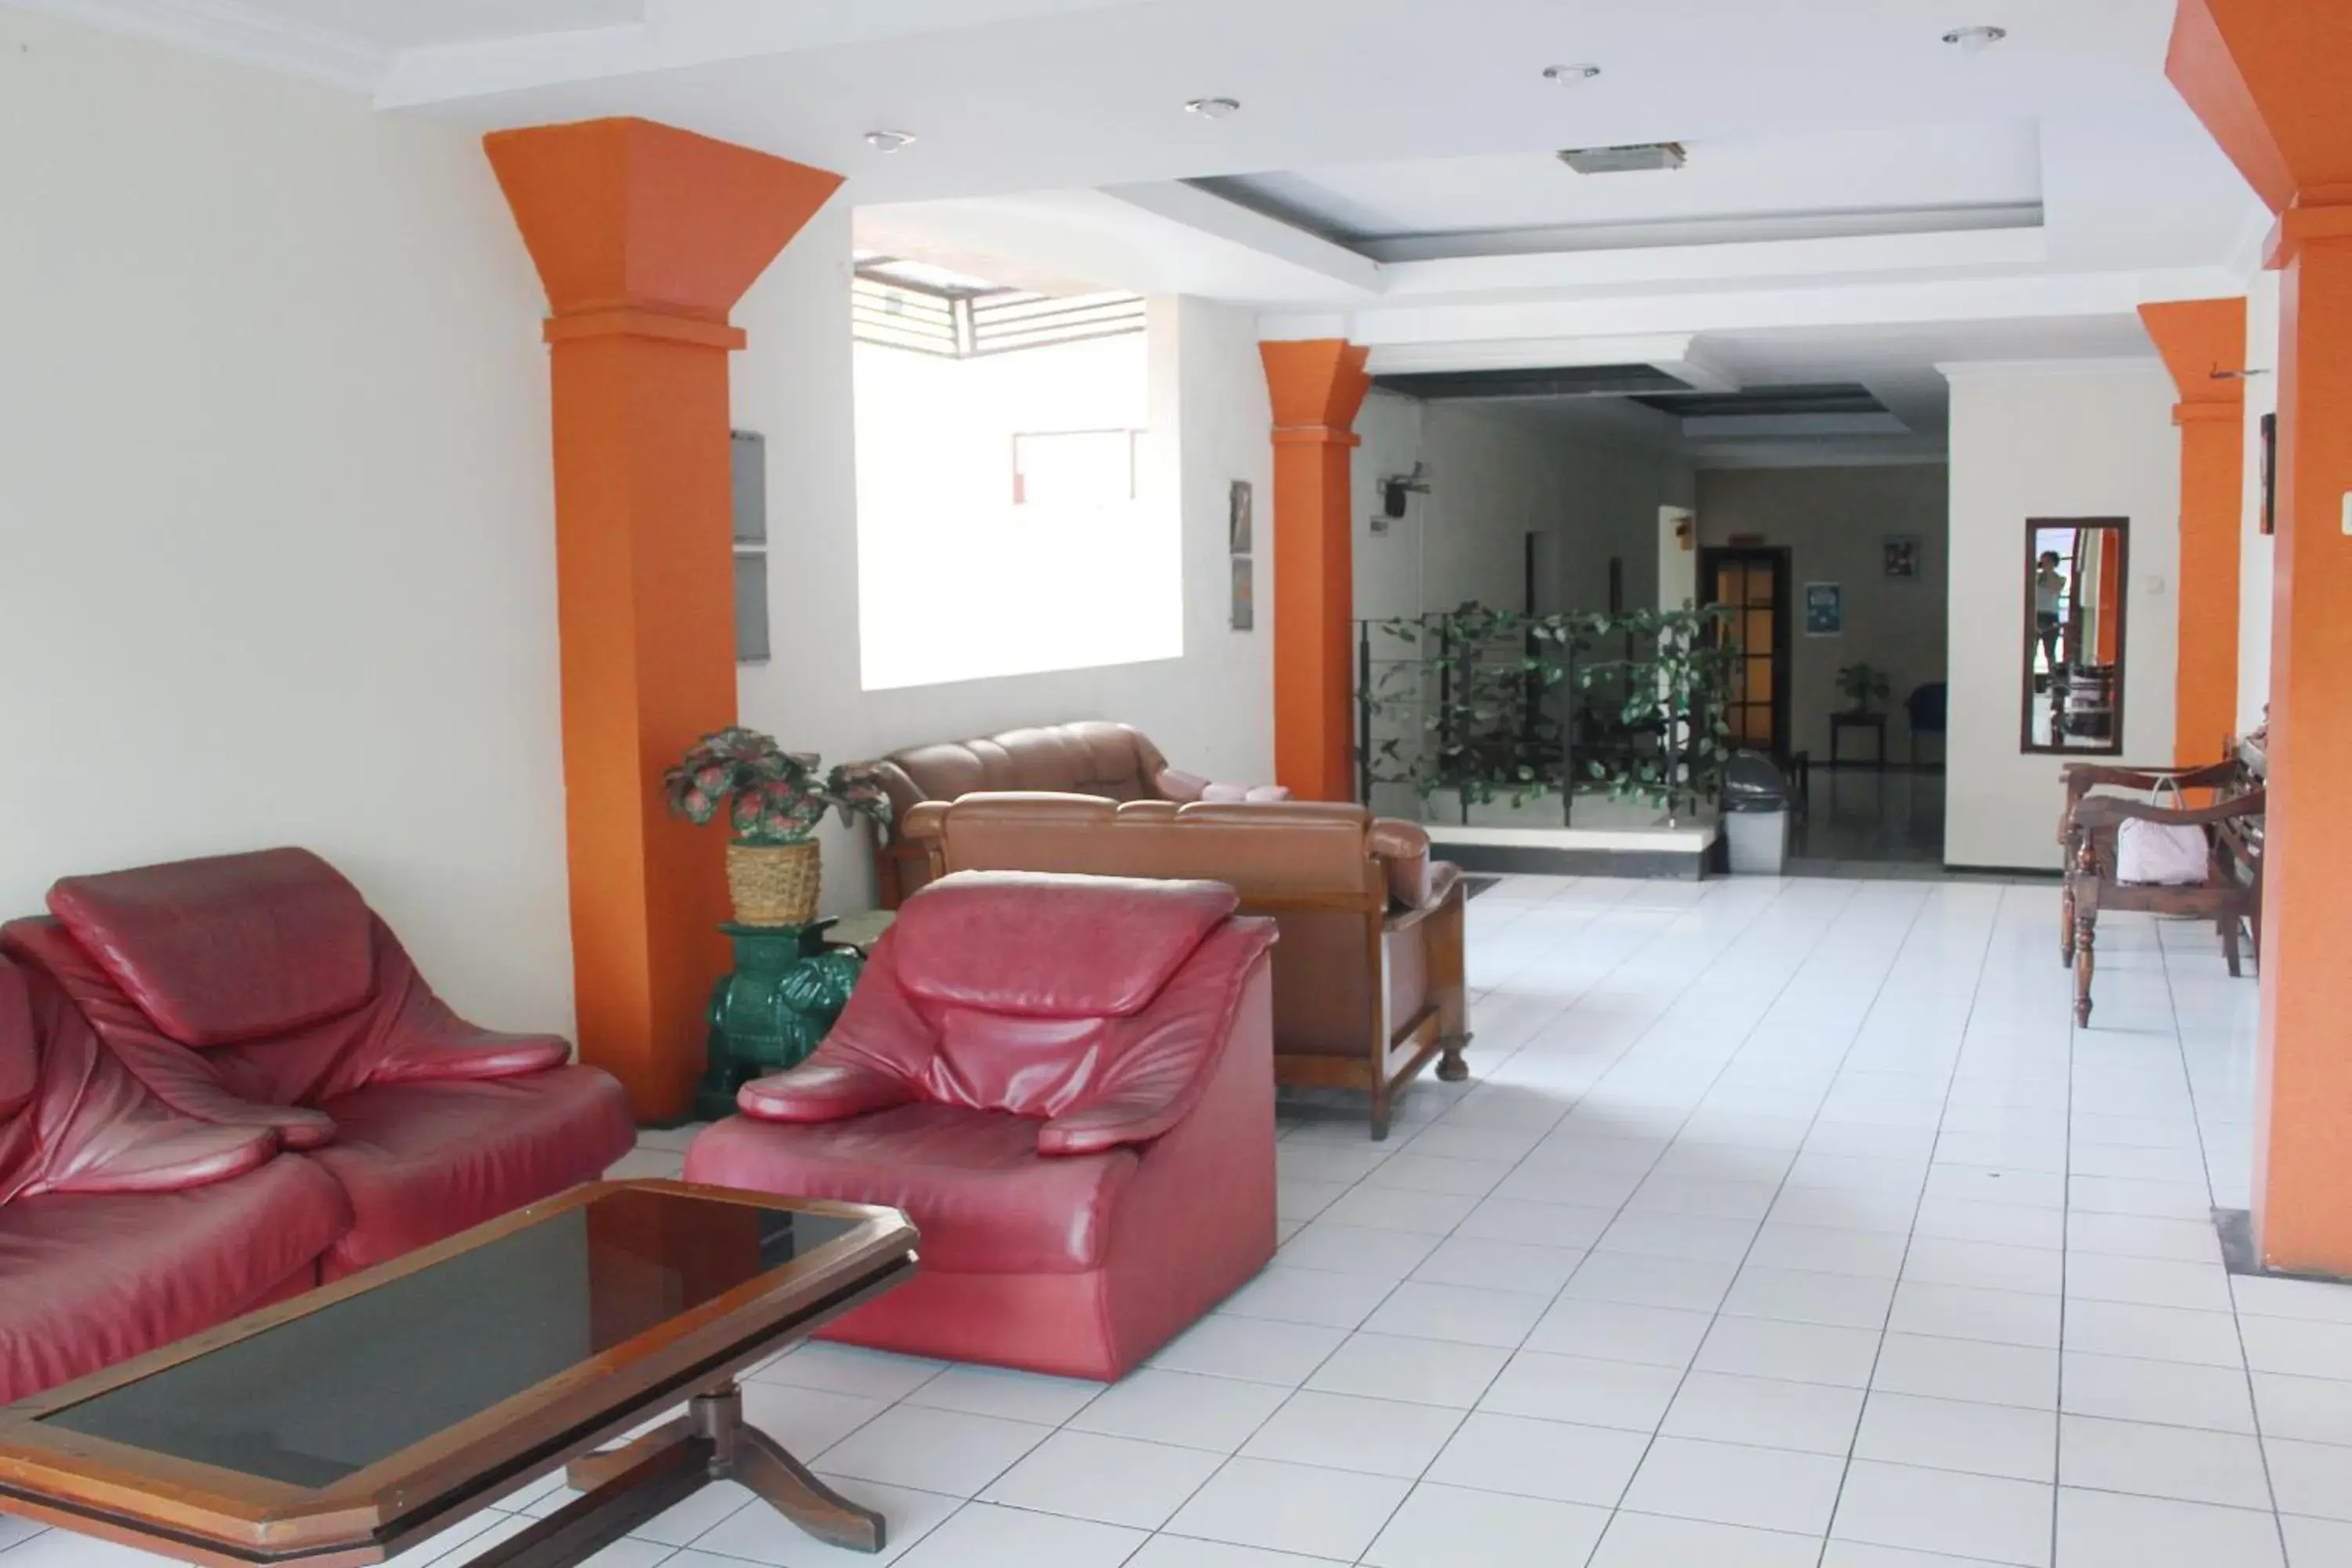 Living room, Lobby/Reception in OYO 206 Hotel Candra Kirana